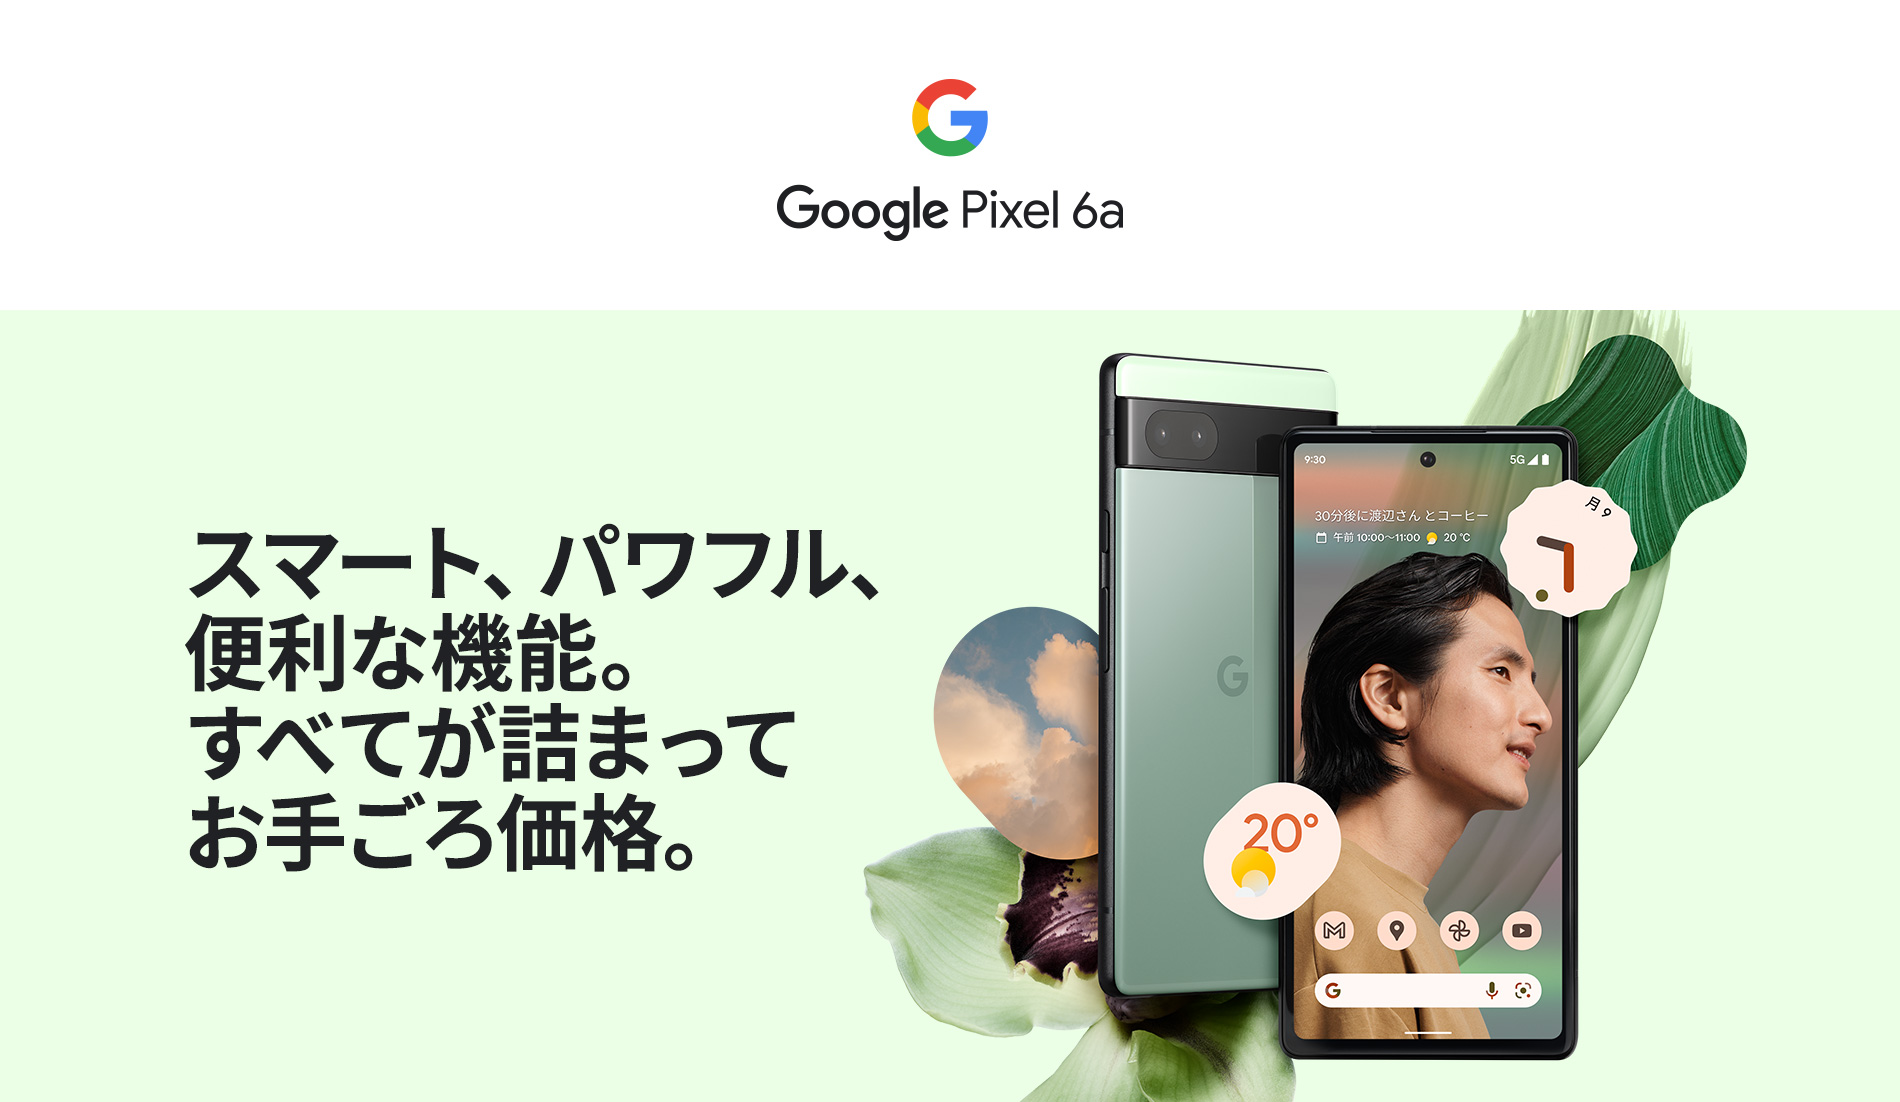 スマートフォン/携帯電話 スマートフォン本体 Google Pixel 6a | スマートフォン・携帯電話 | ソフトバンク